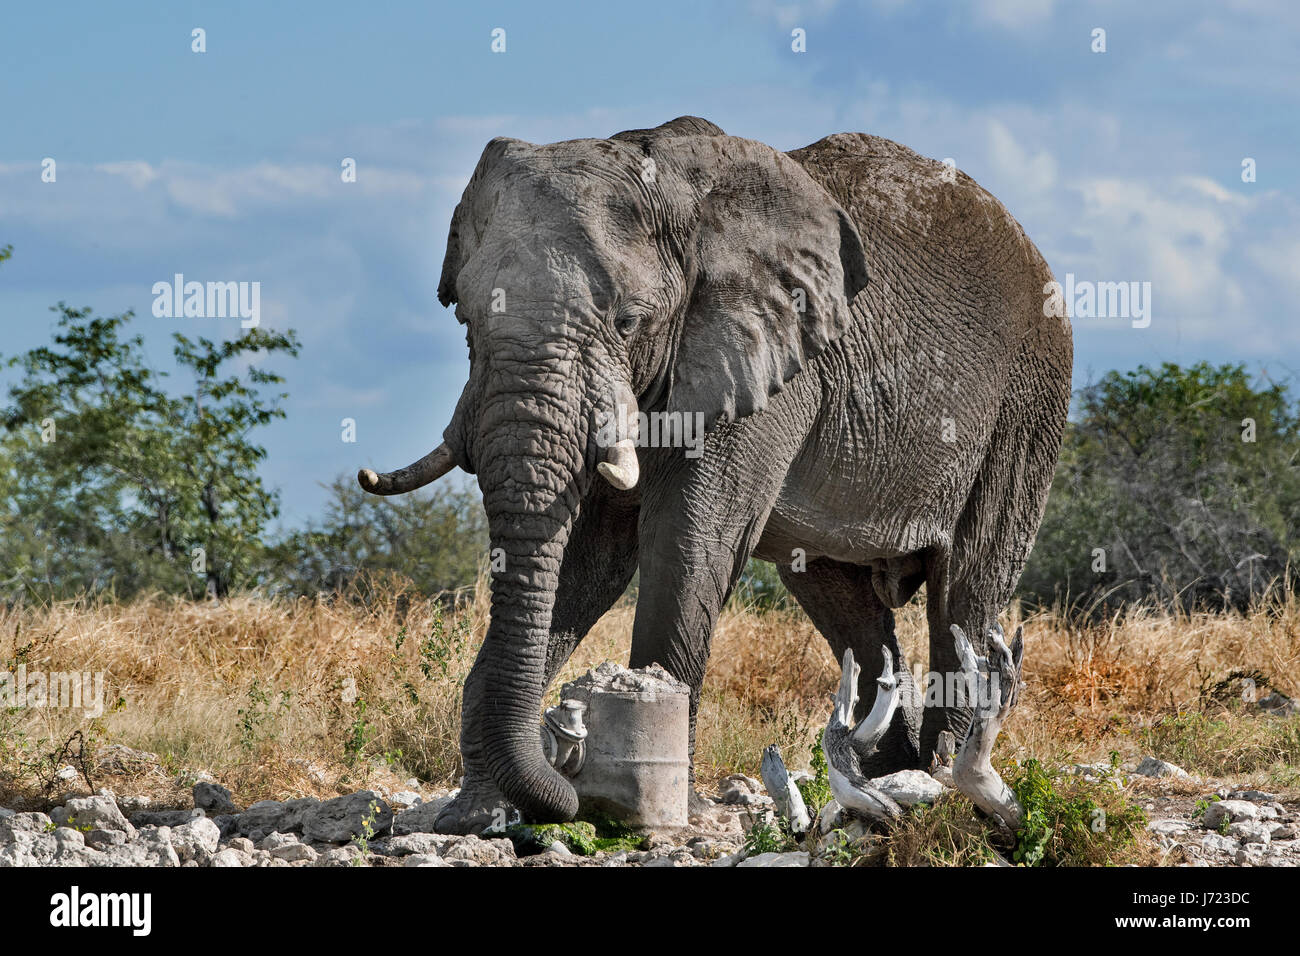 Loxodonta africana, African Elephant Stock Photo